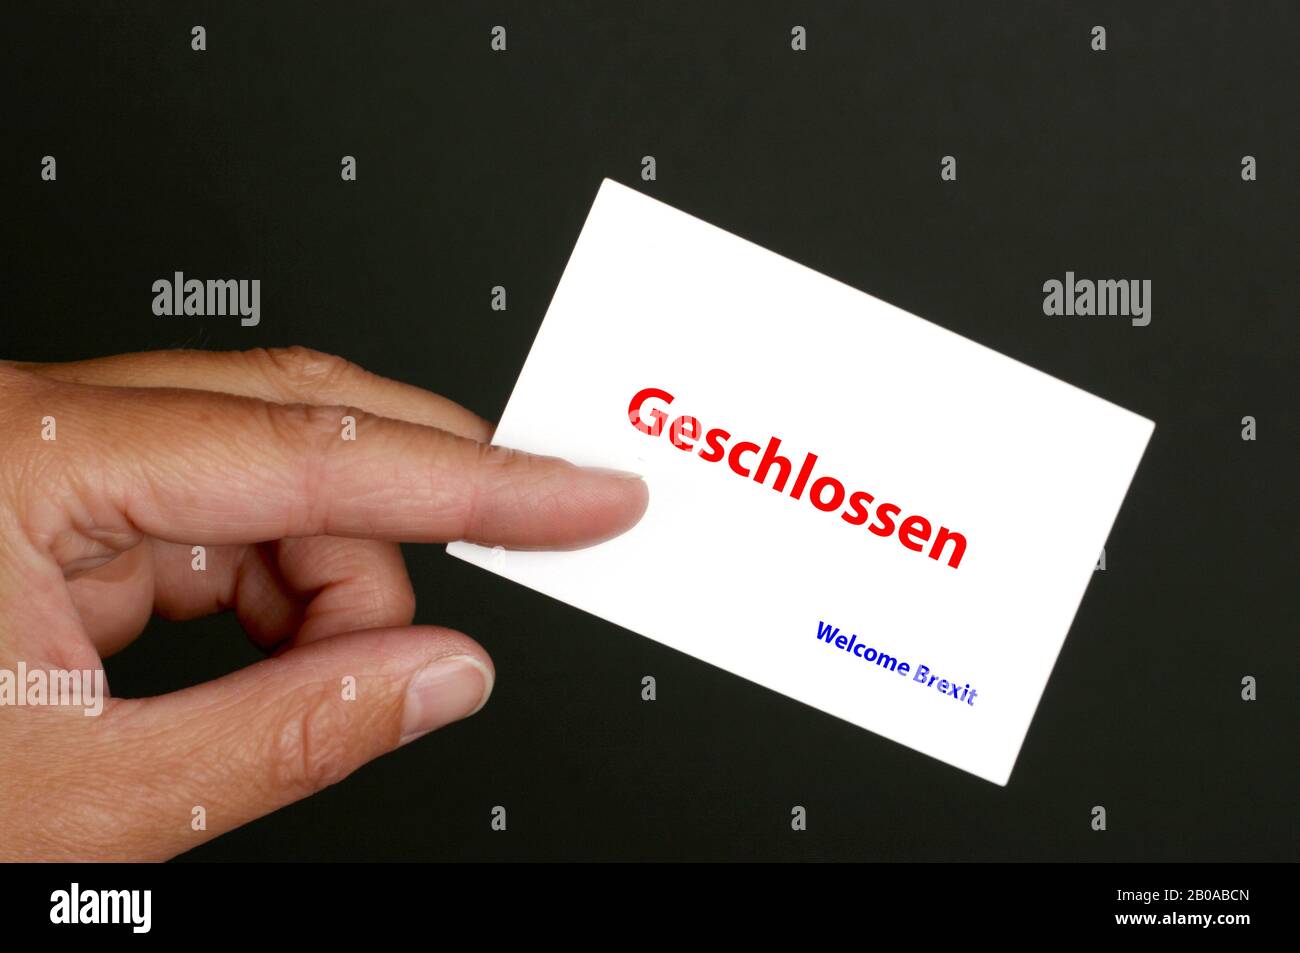 Mano contra fondo negro sosteniendo letras de tarjeta Geschlossen, close, Welcome Brexit, Alemania Foto de stock